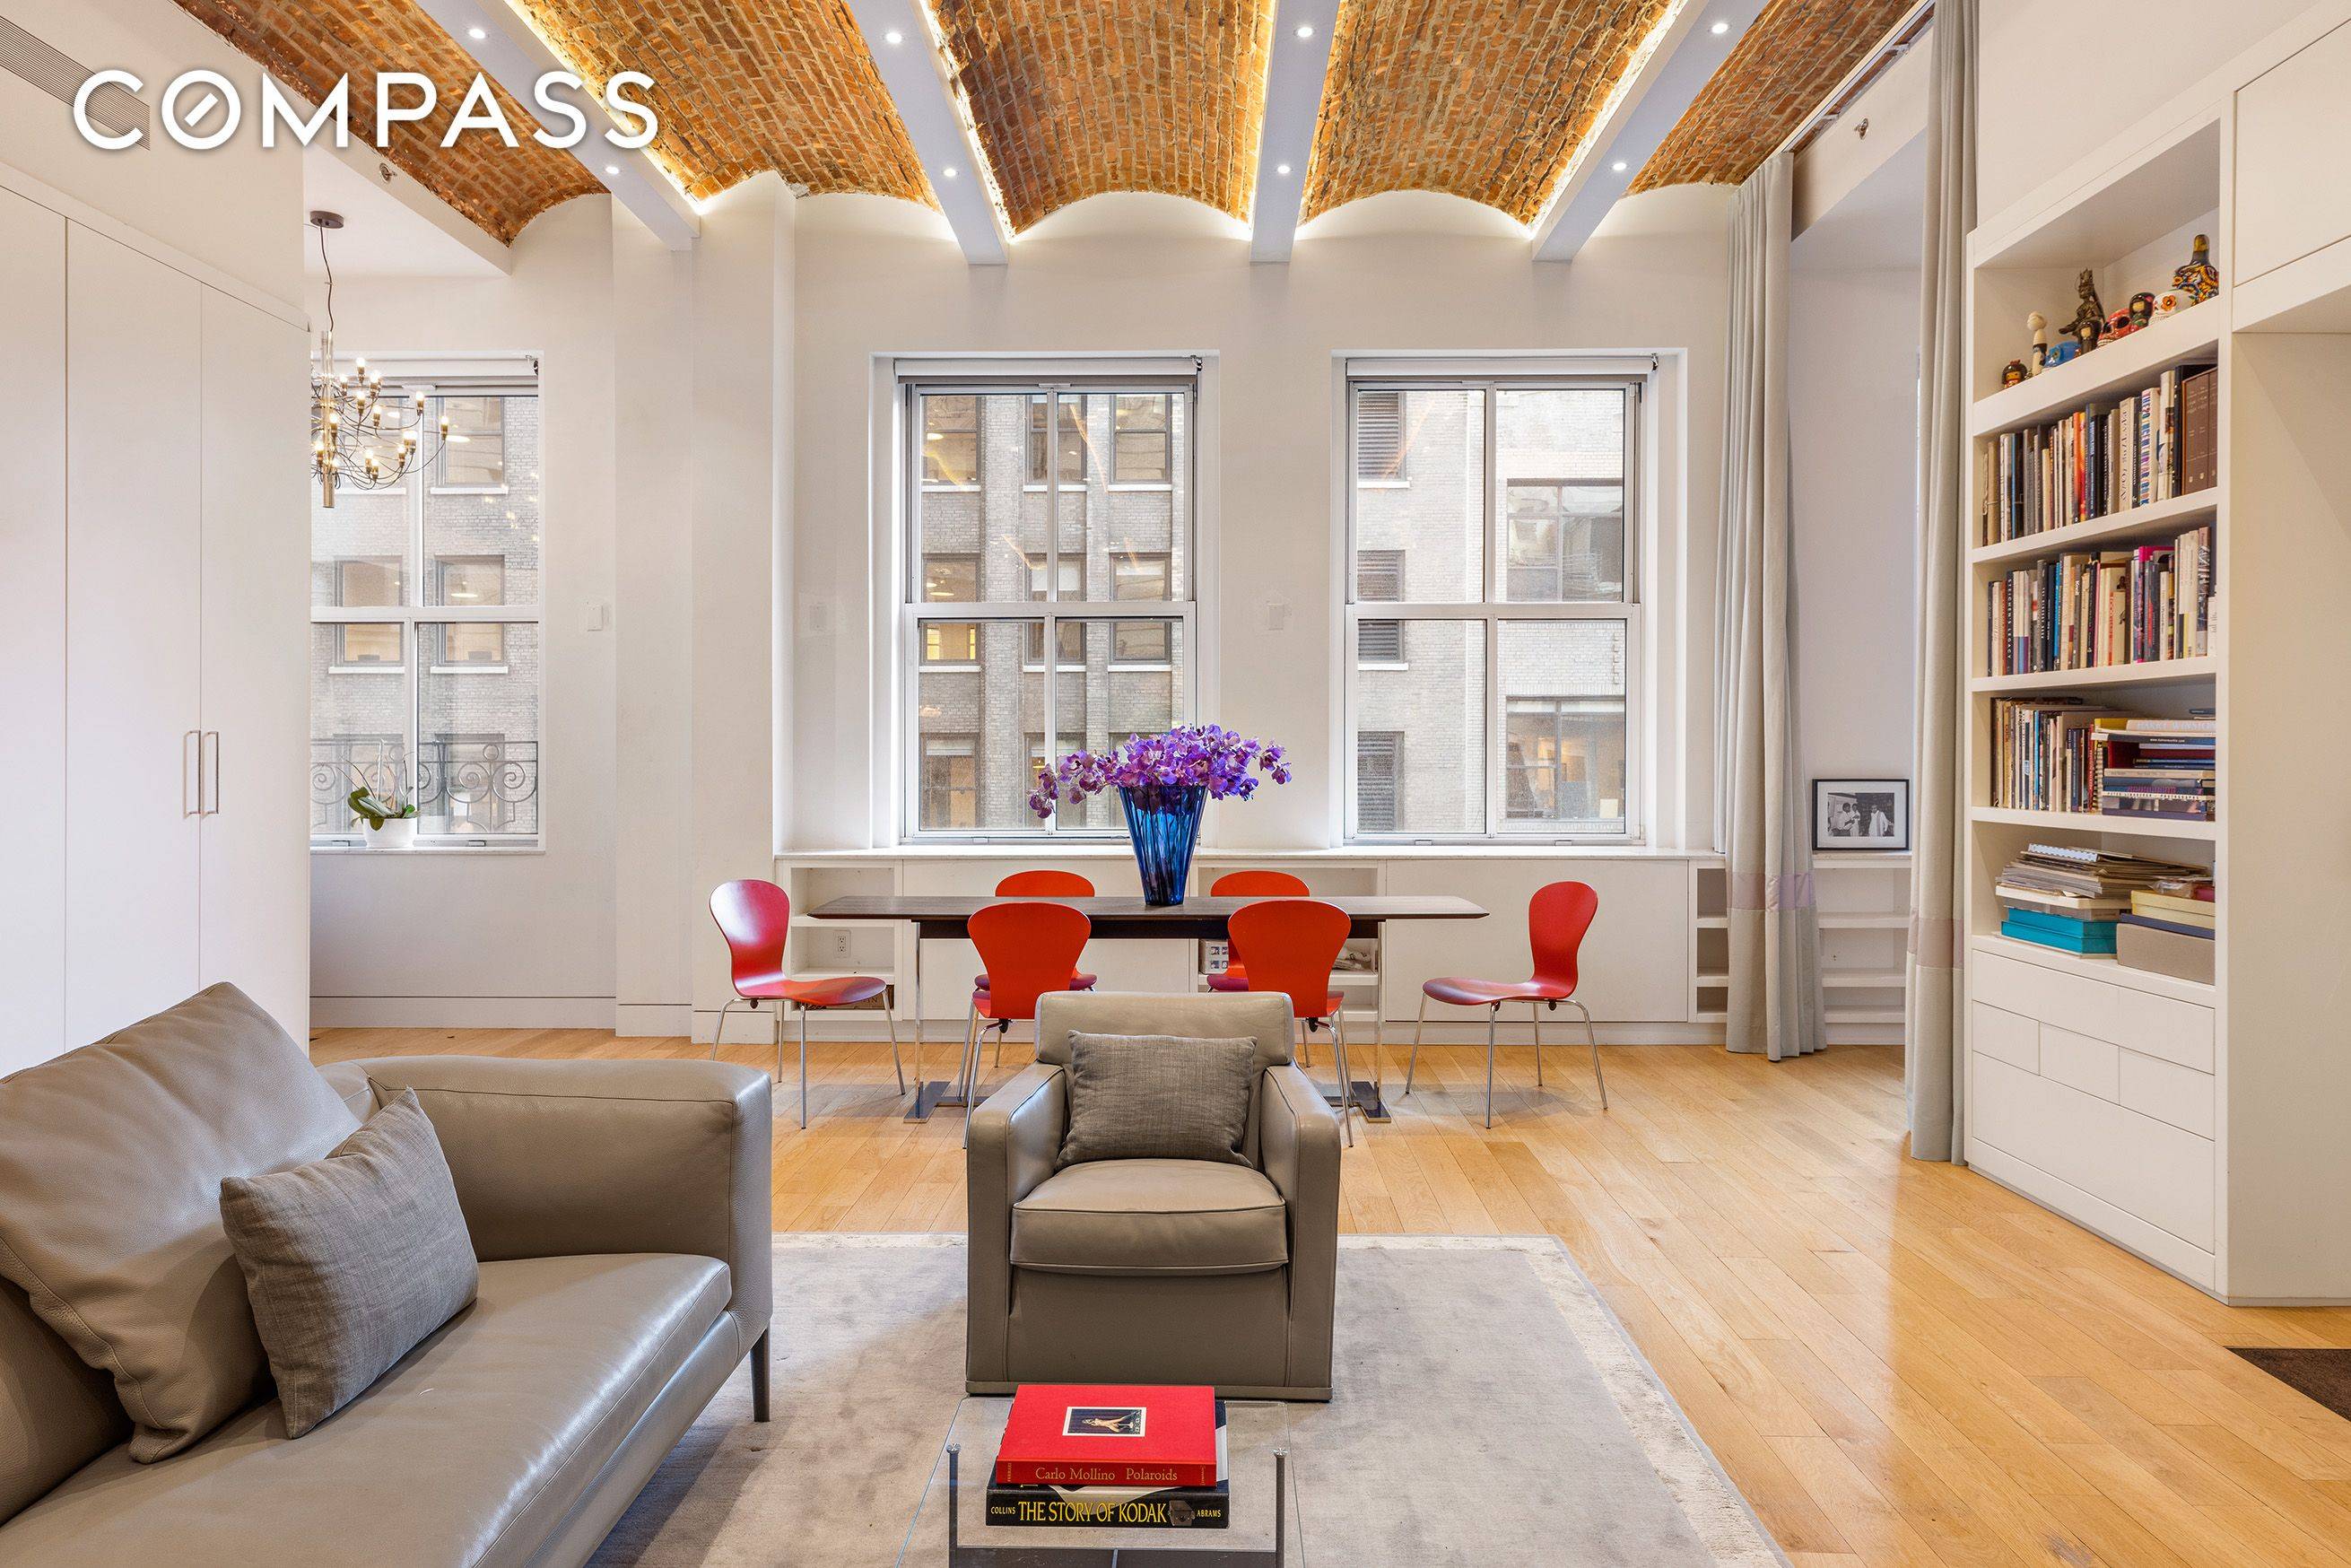 This elegant 3, 163 sq ft Tribeca loft offers a 3 bedroom, 3.